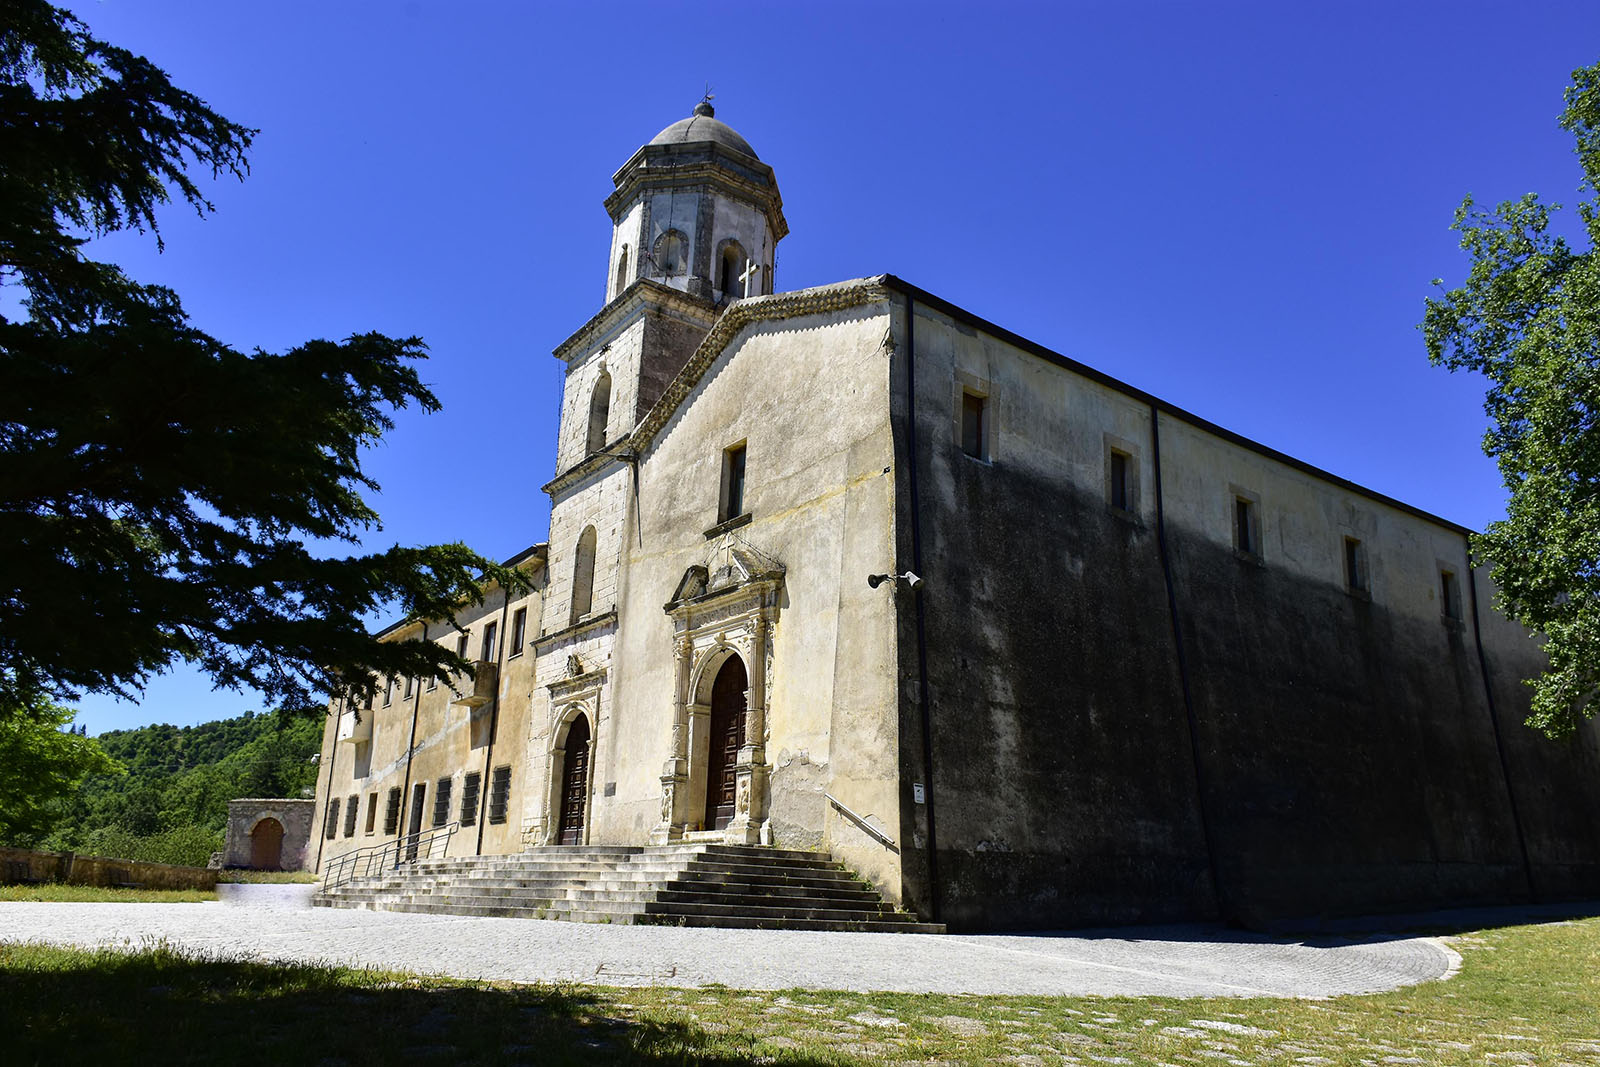 Convento Santa Spina